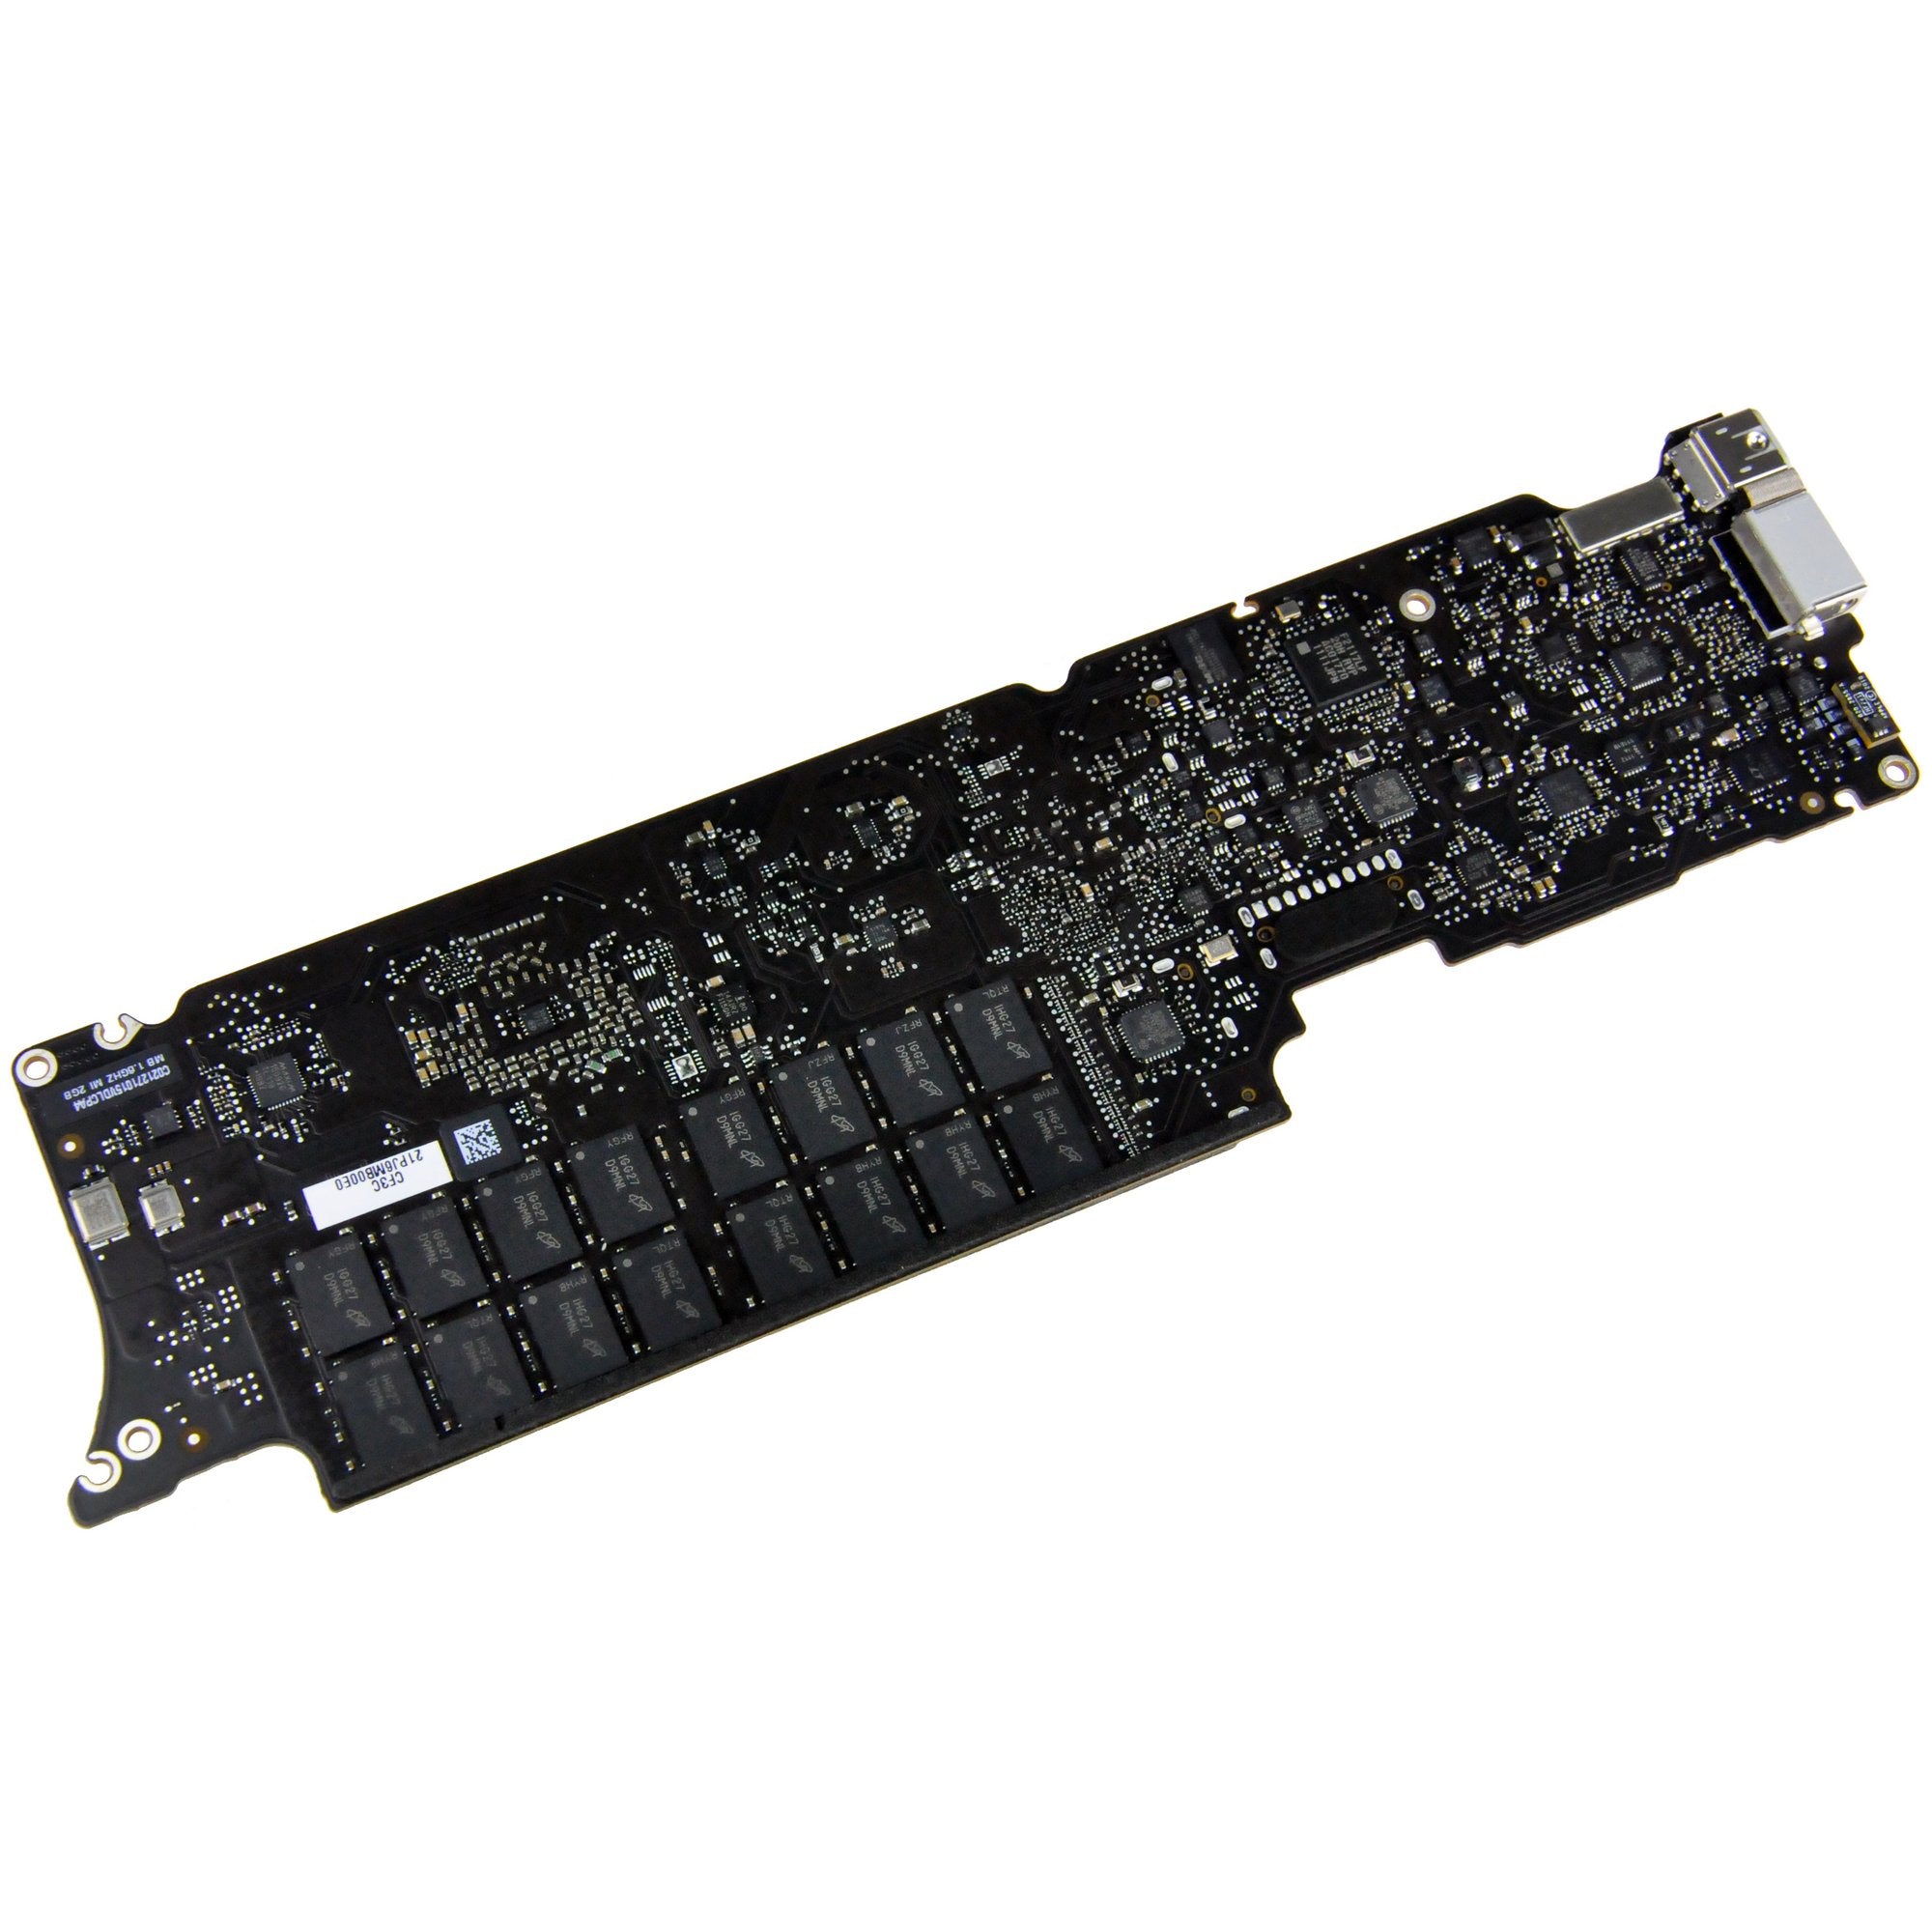 MacBook Air 11" (Mid 2011) 1.6 GHz Logic Board 4 GB RAM Used